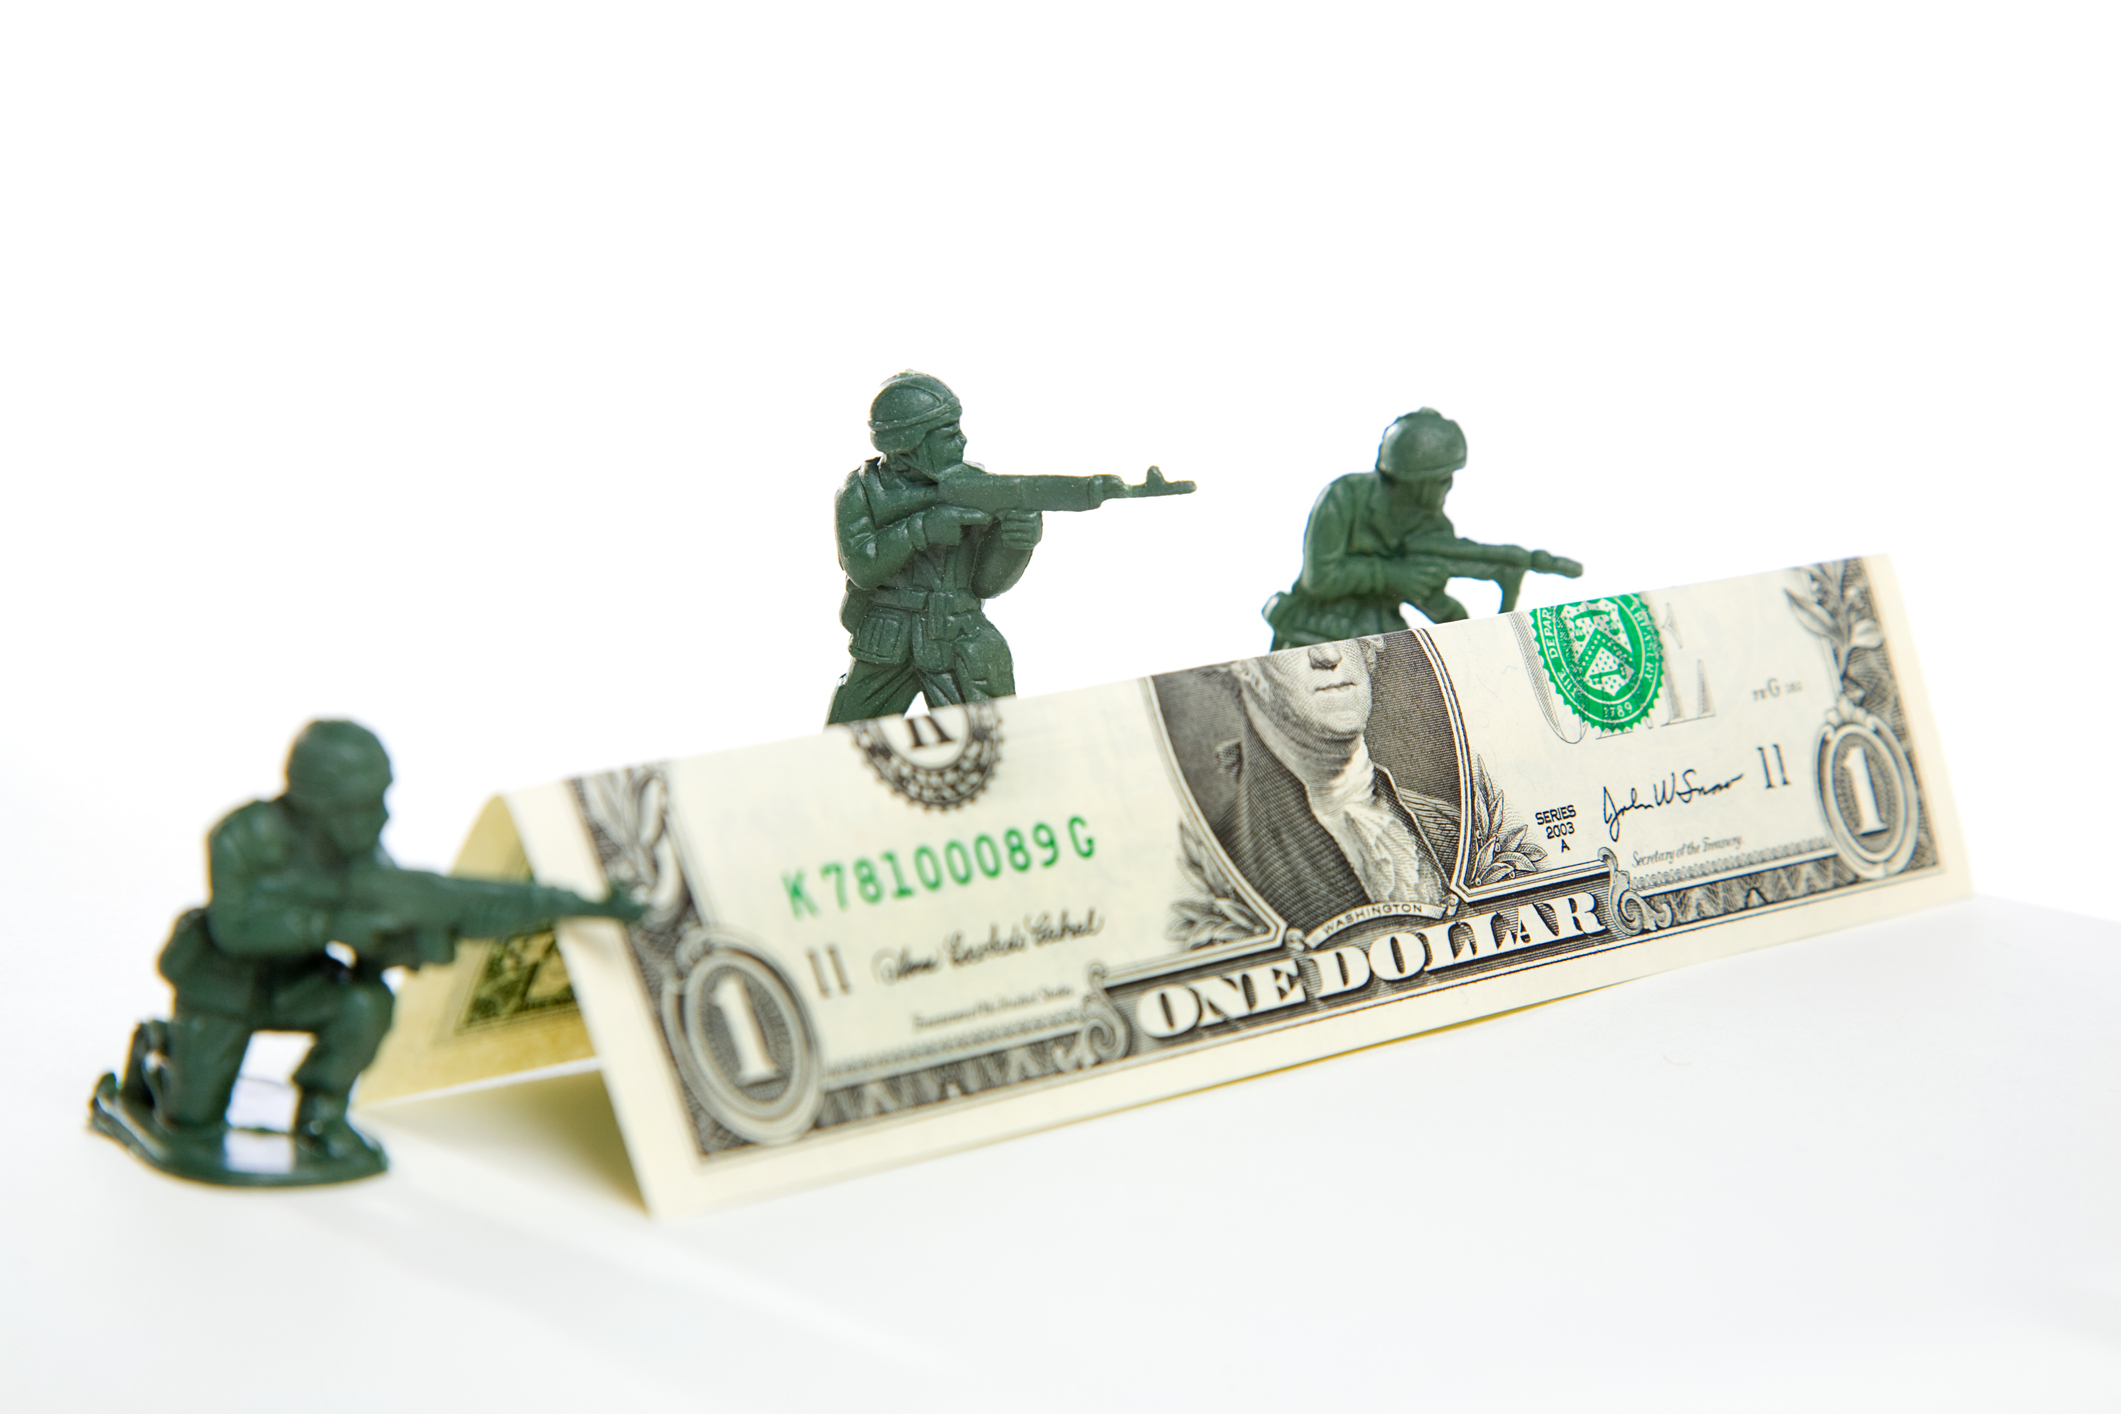 ثلاثة جنود من الألعاب البلاستيكية يطلقون النار فوق حاجز مصنوع من ورقة دولار مطوية